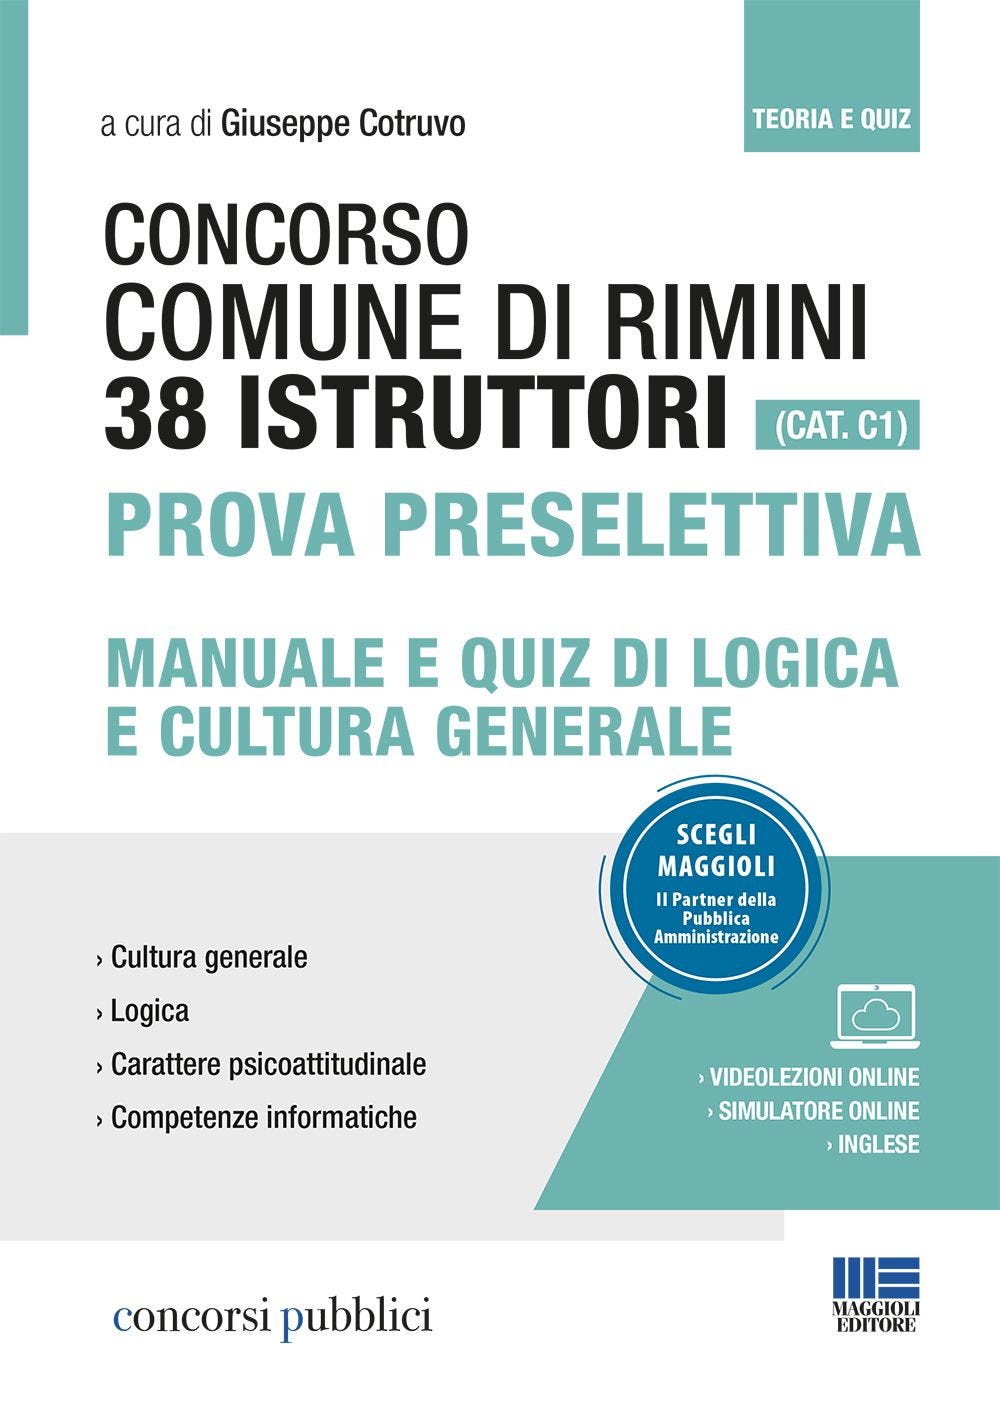 Concorso 38 Istruttori Comune di Rimini (CAT. C1) - Prova preselettiva